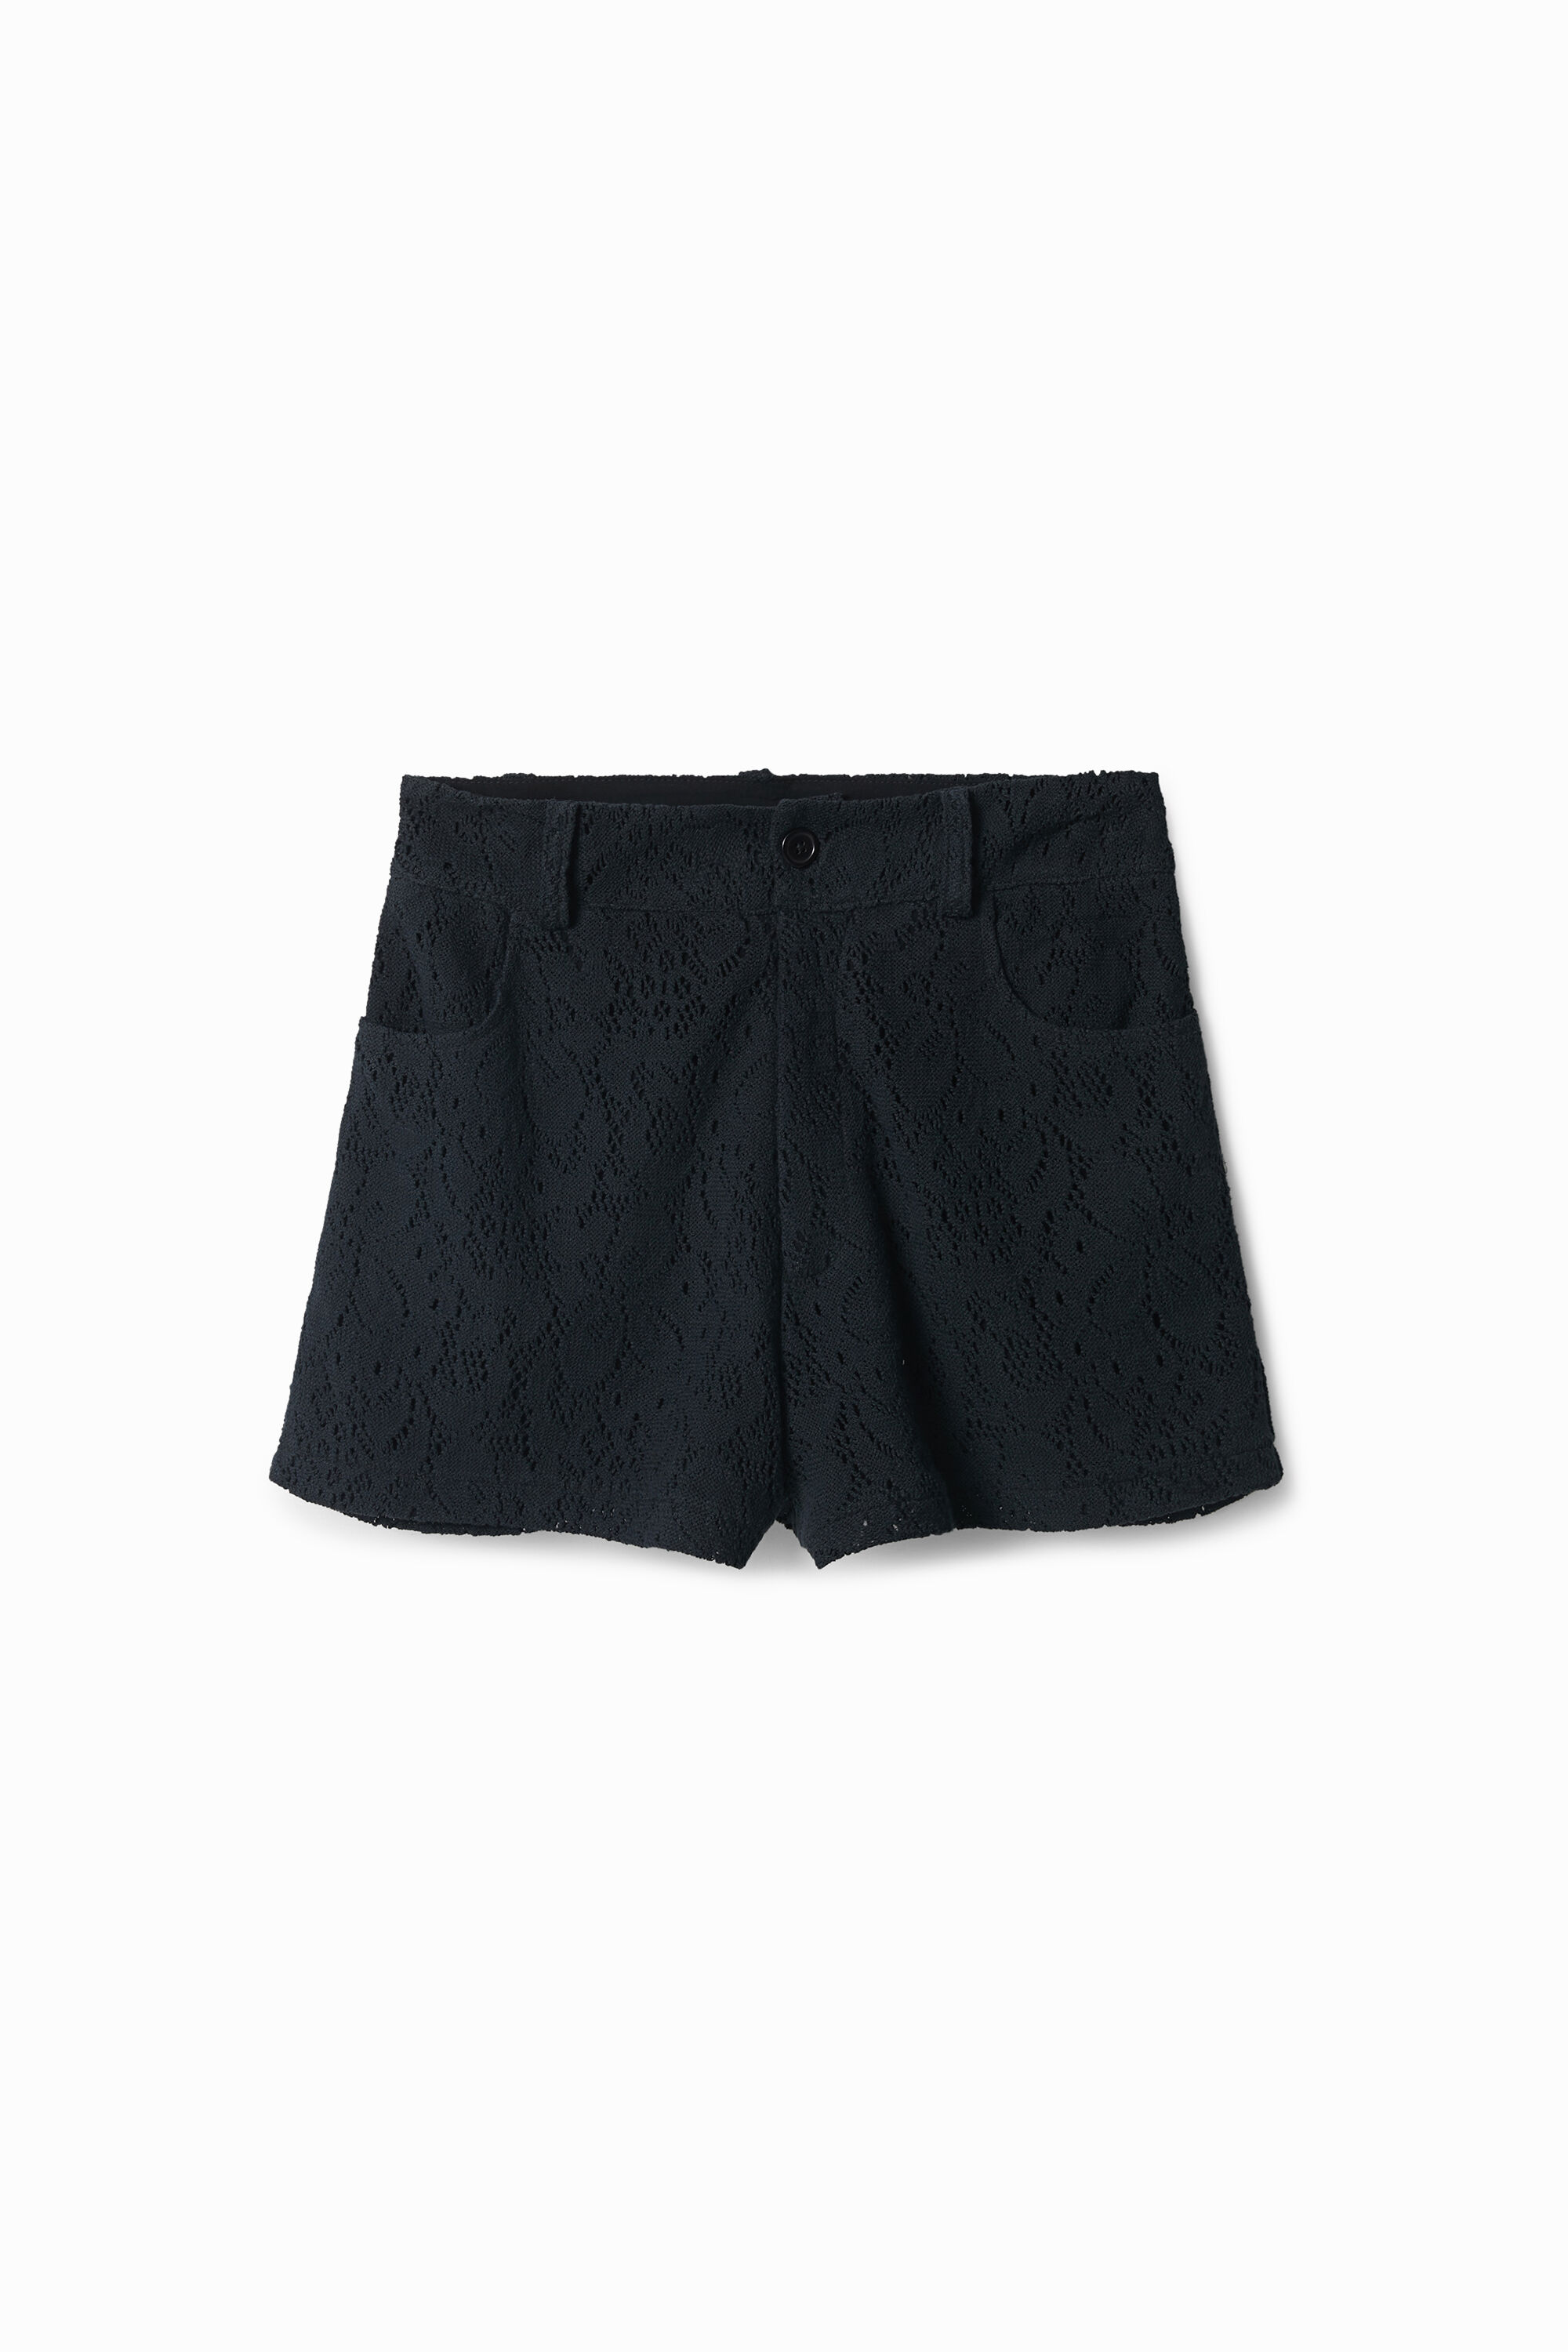 Chrochet shorts - BLACK - XL